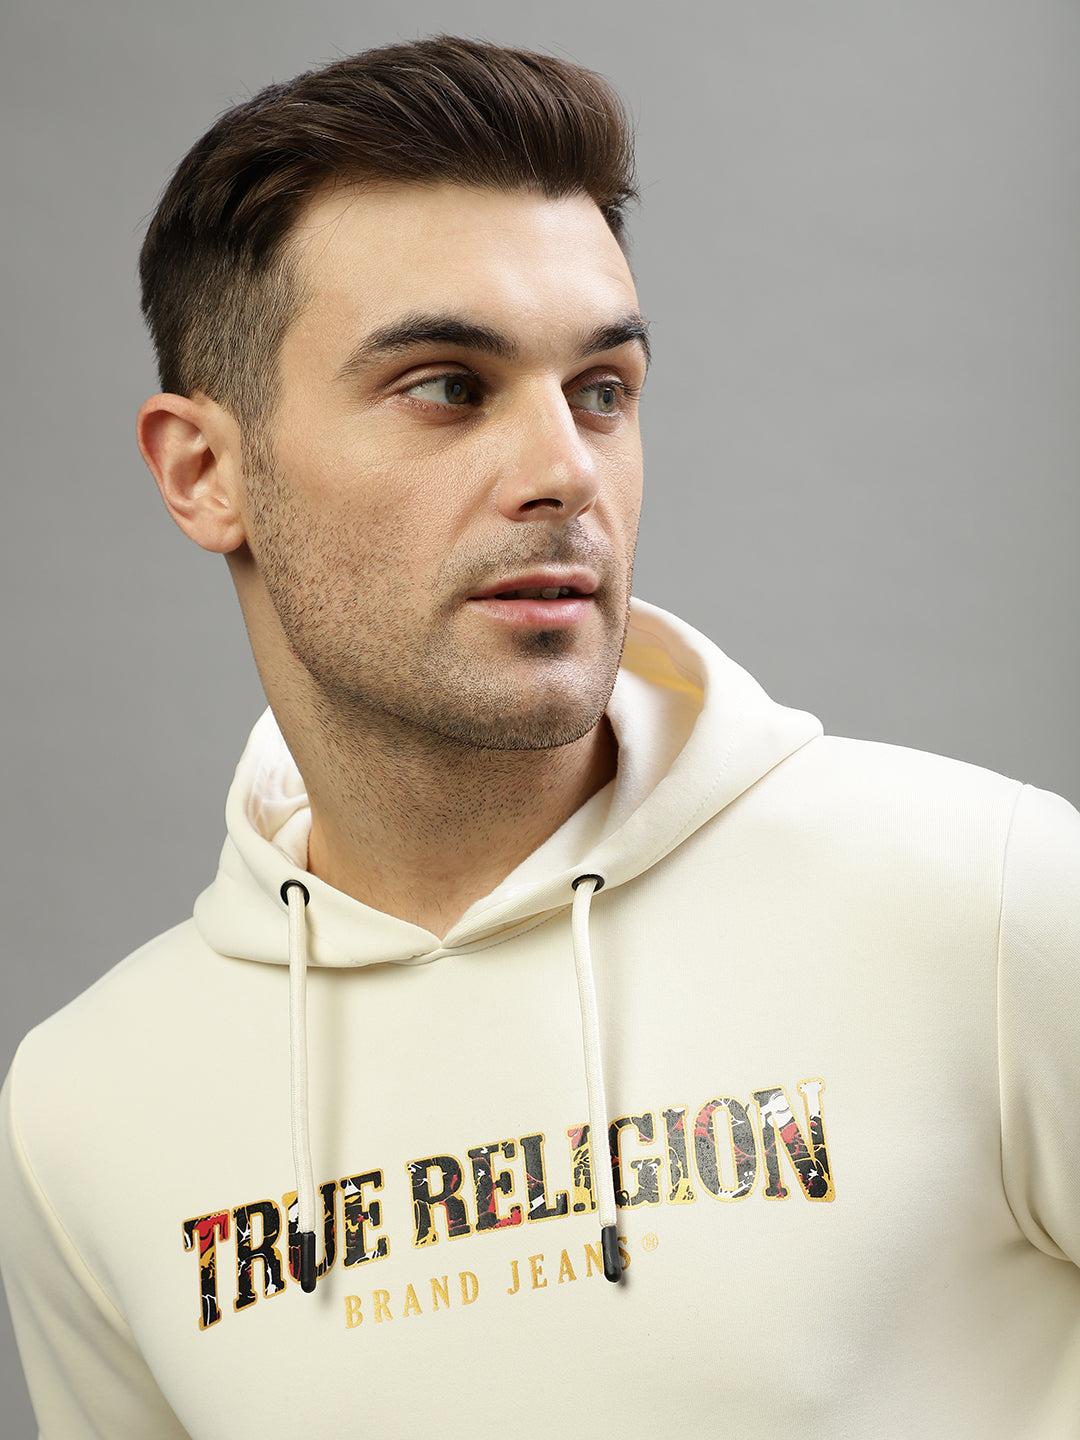 True Religion Men Printed Hooded Full Sleeves Sweatshirt